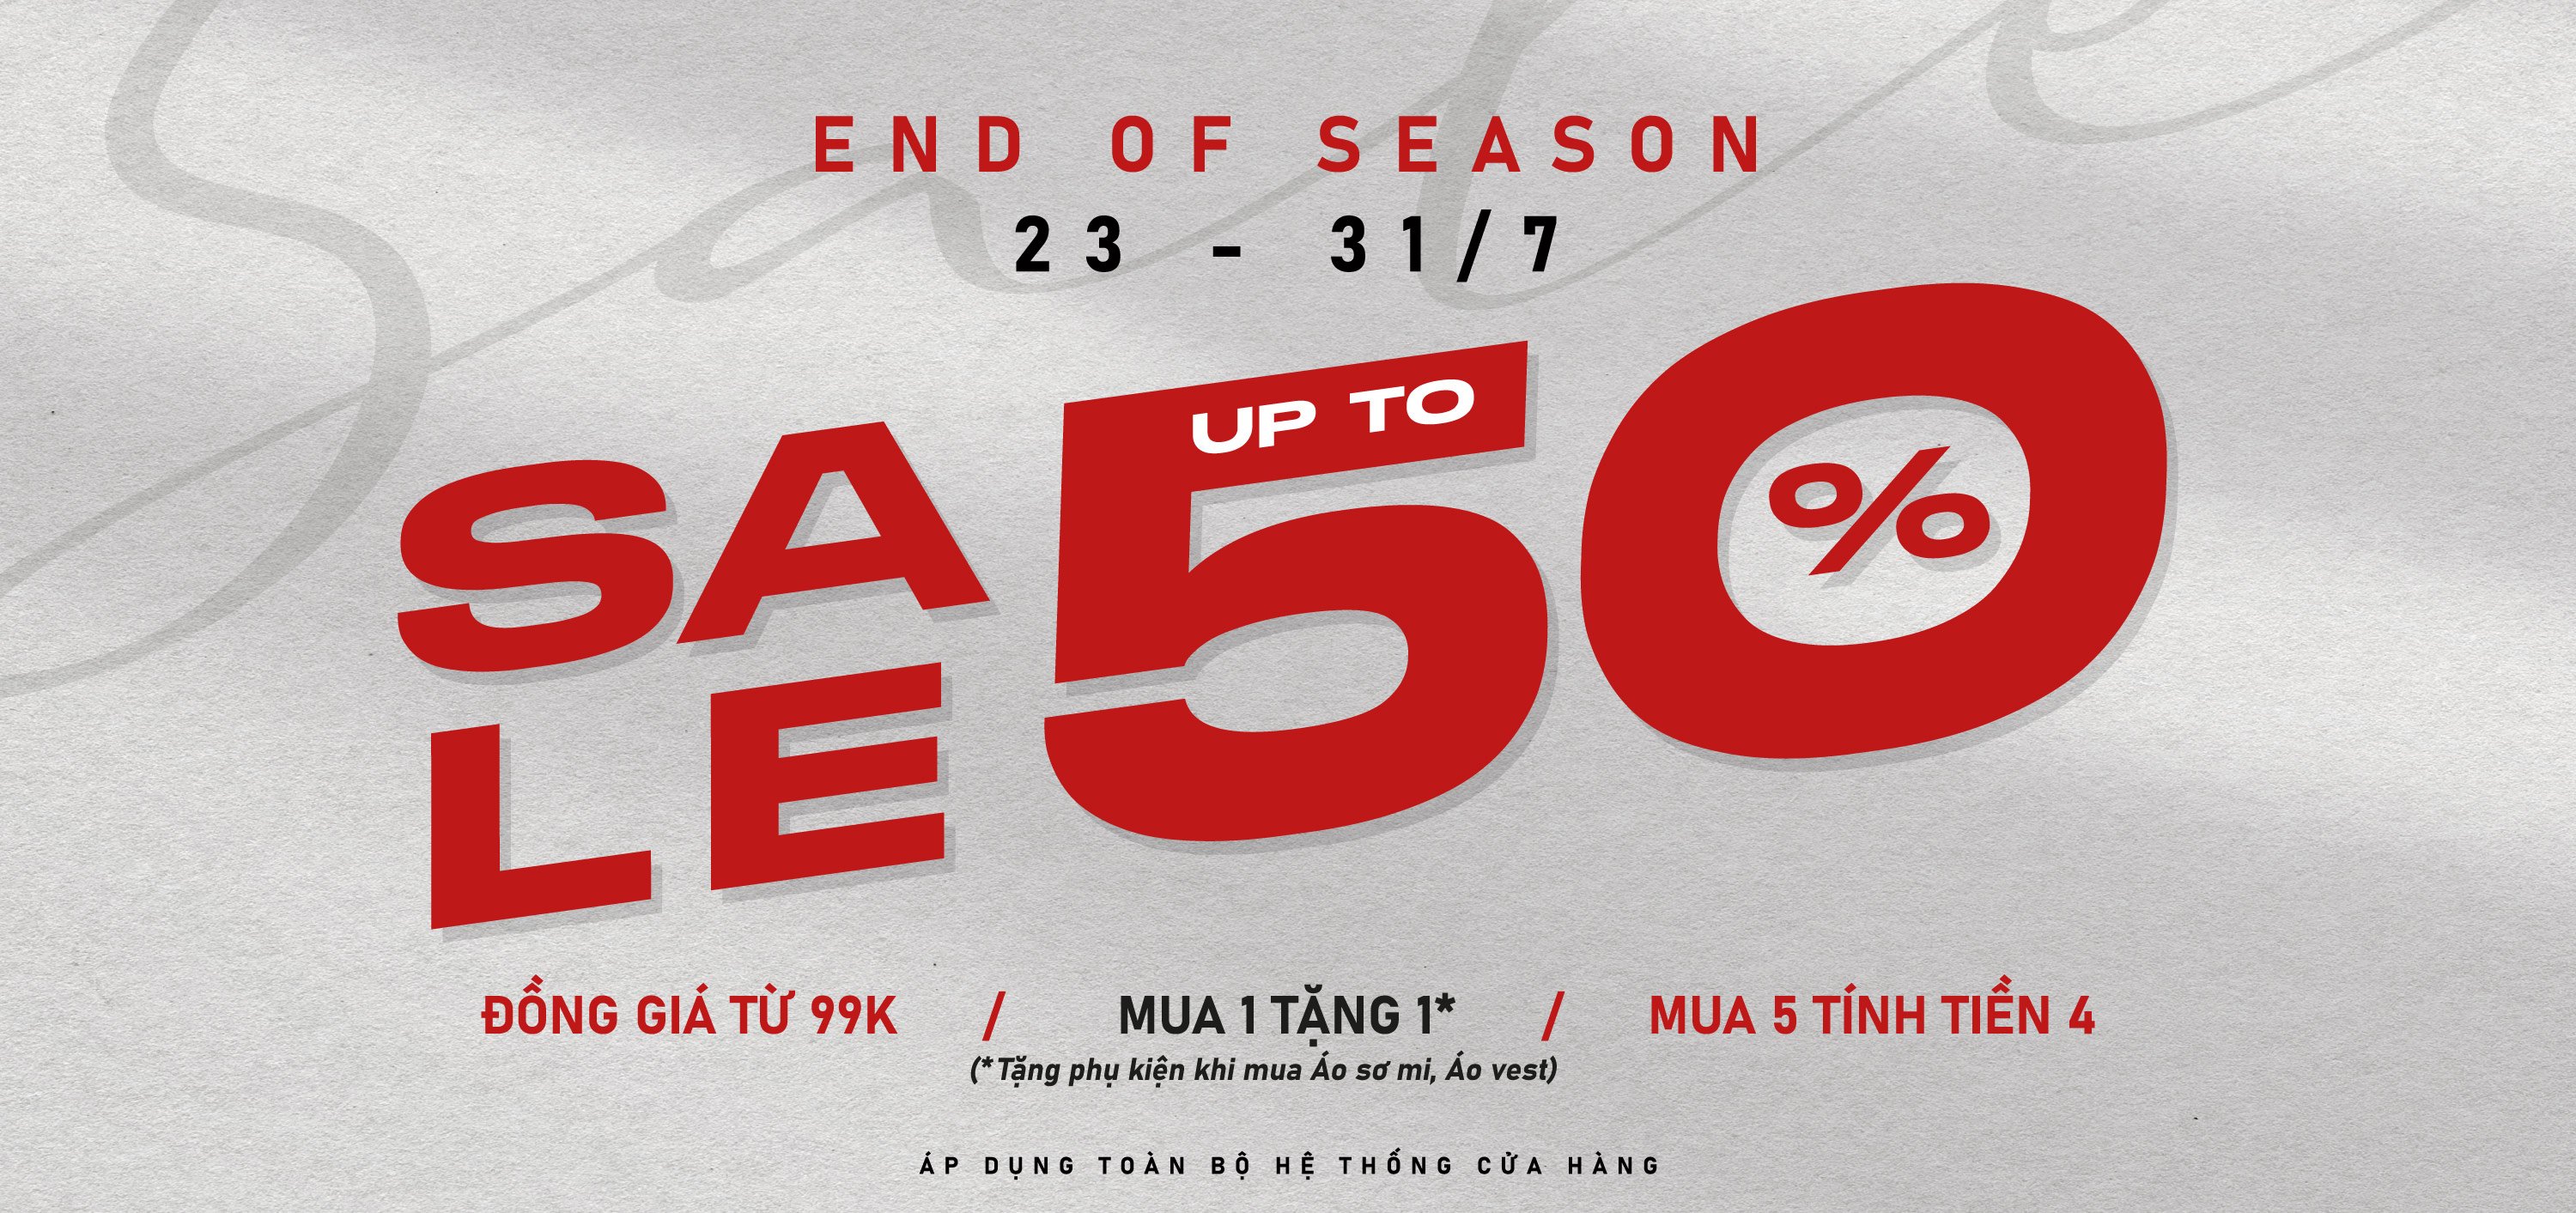 End of season sale - 1